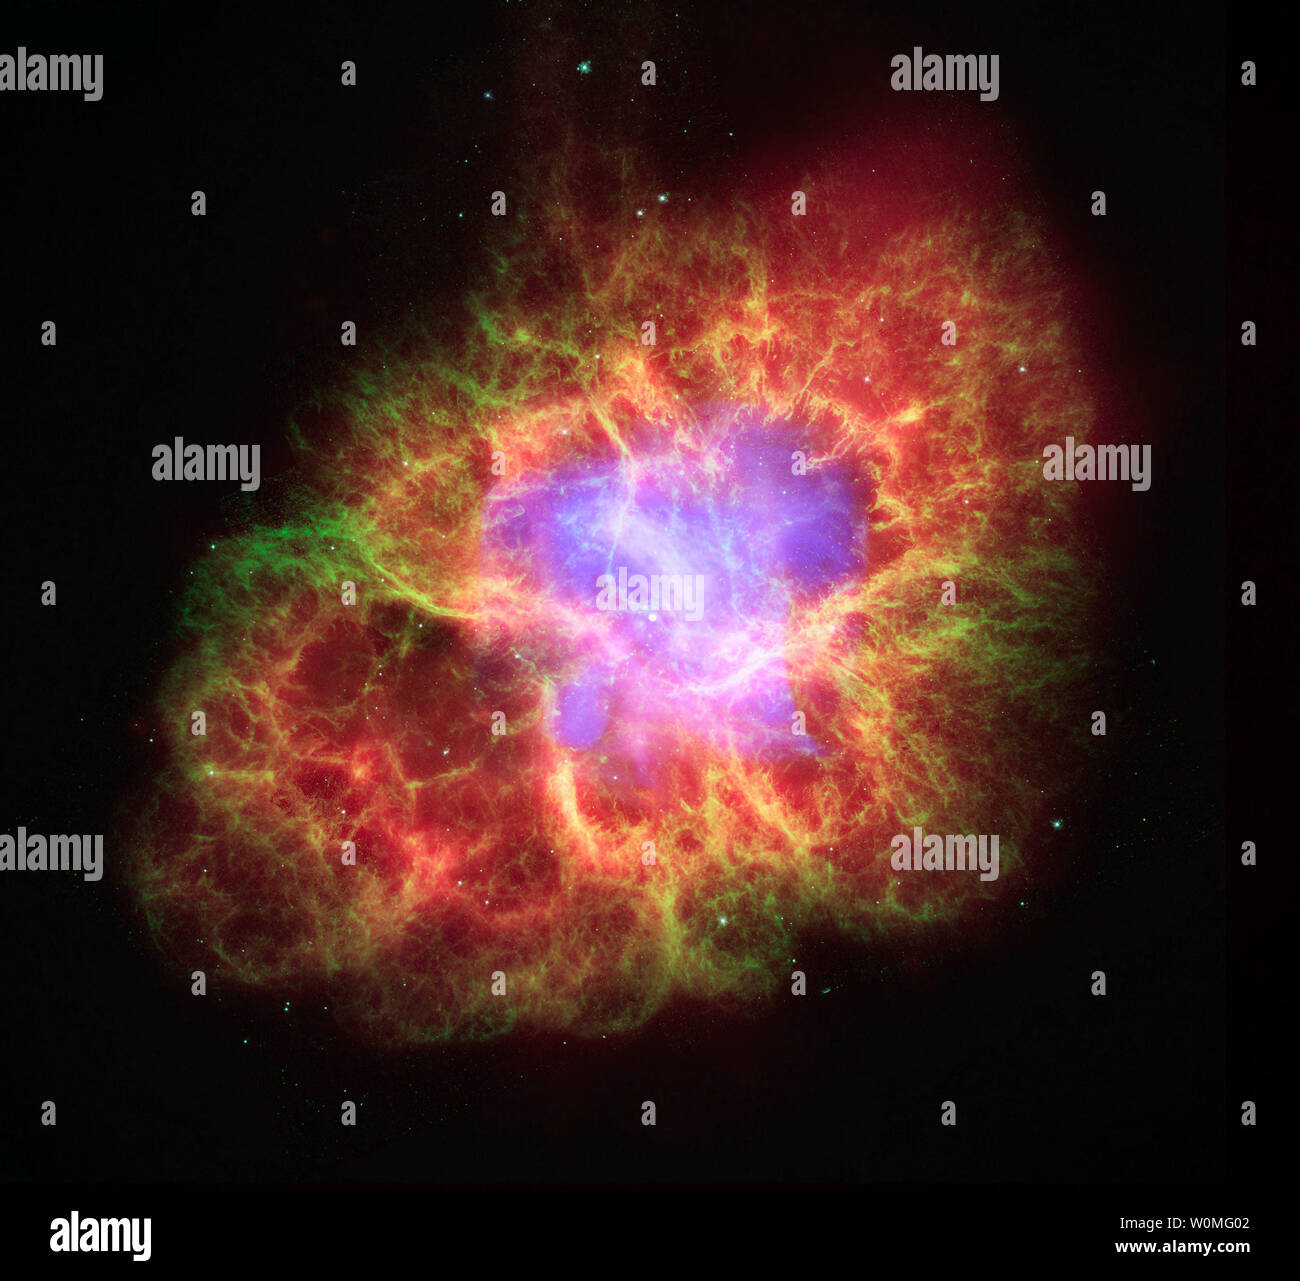 Questo non datata immagine della NASA mostra una superdense stella di neutroni che è stato lasciato dopo una supernova nella costellazione del Toro. La stella è produca un blizzard di estremamente particelle ad alta energia in espansione campo detriti conosciuta come la Nebulosa del granchio. Questa immagine composita utilizza i dati provenienti da tre osservatori della NASA, il Chandra X-ray obervatory, il Telescopio Spaziale Hubble e il telescopio spaziale Spitzer. UPI/NASA Foto Stock